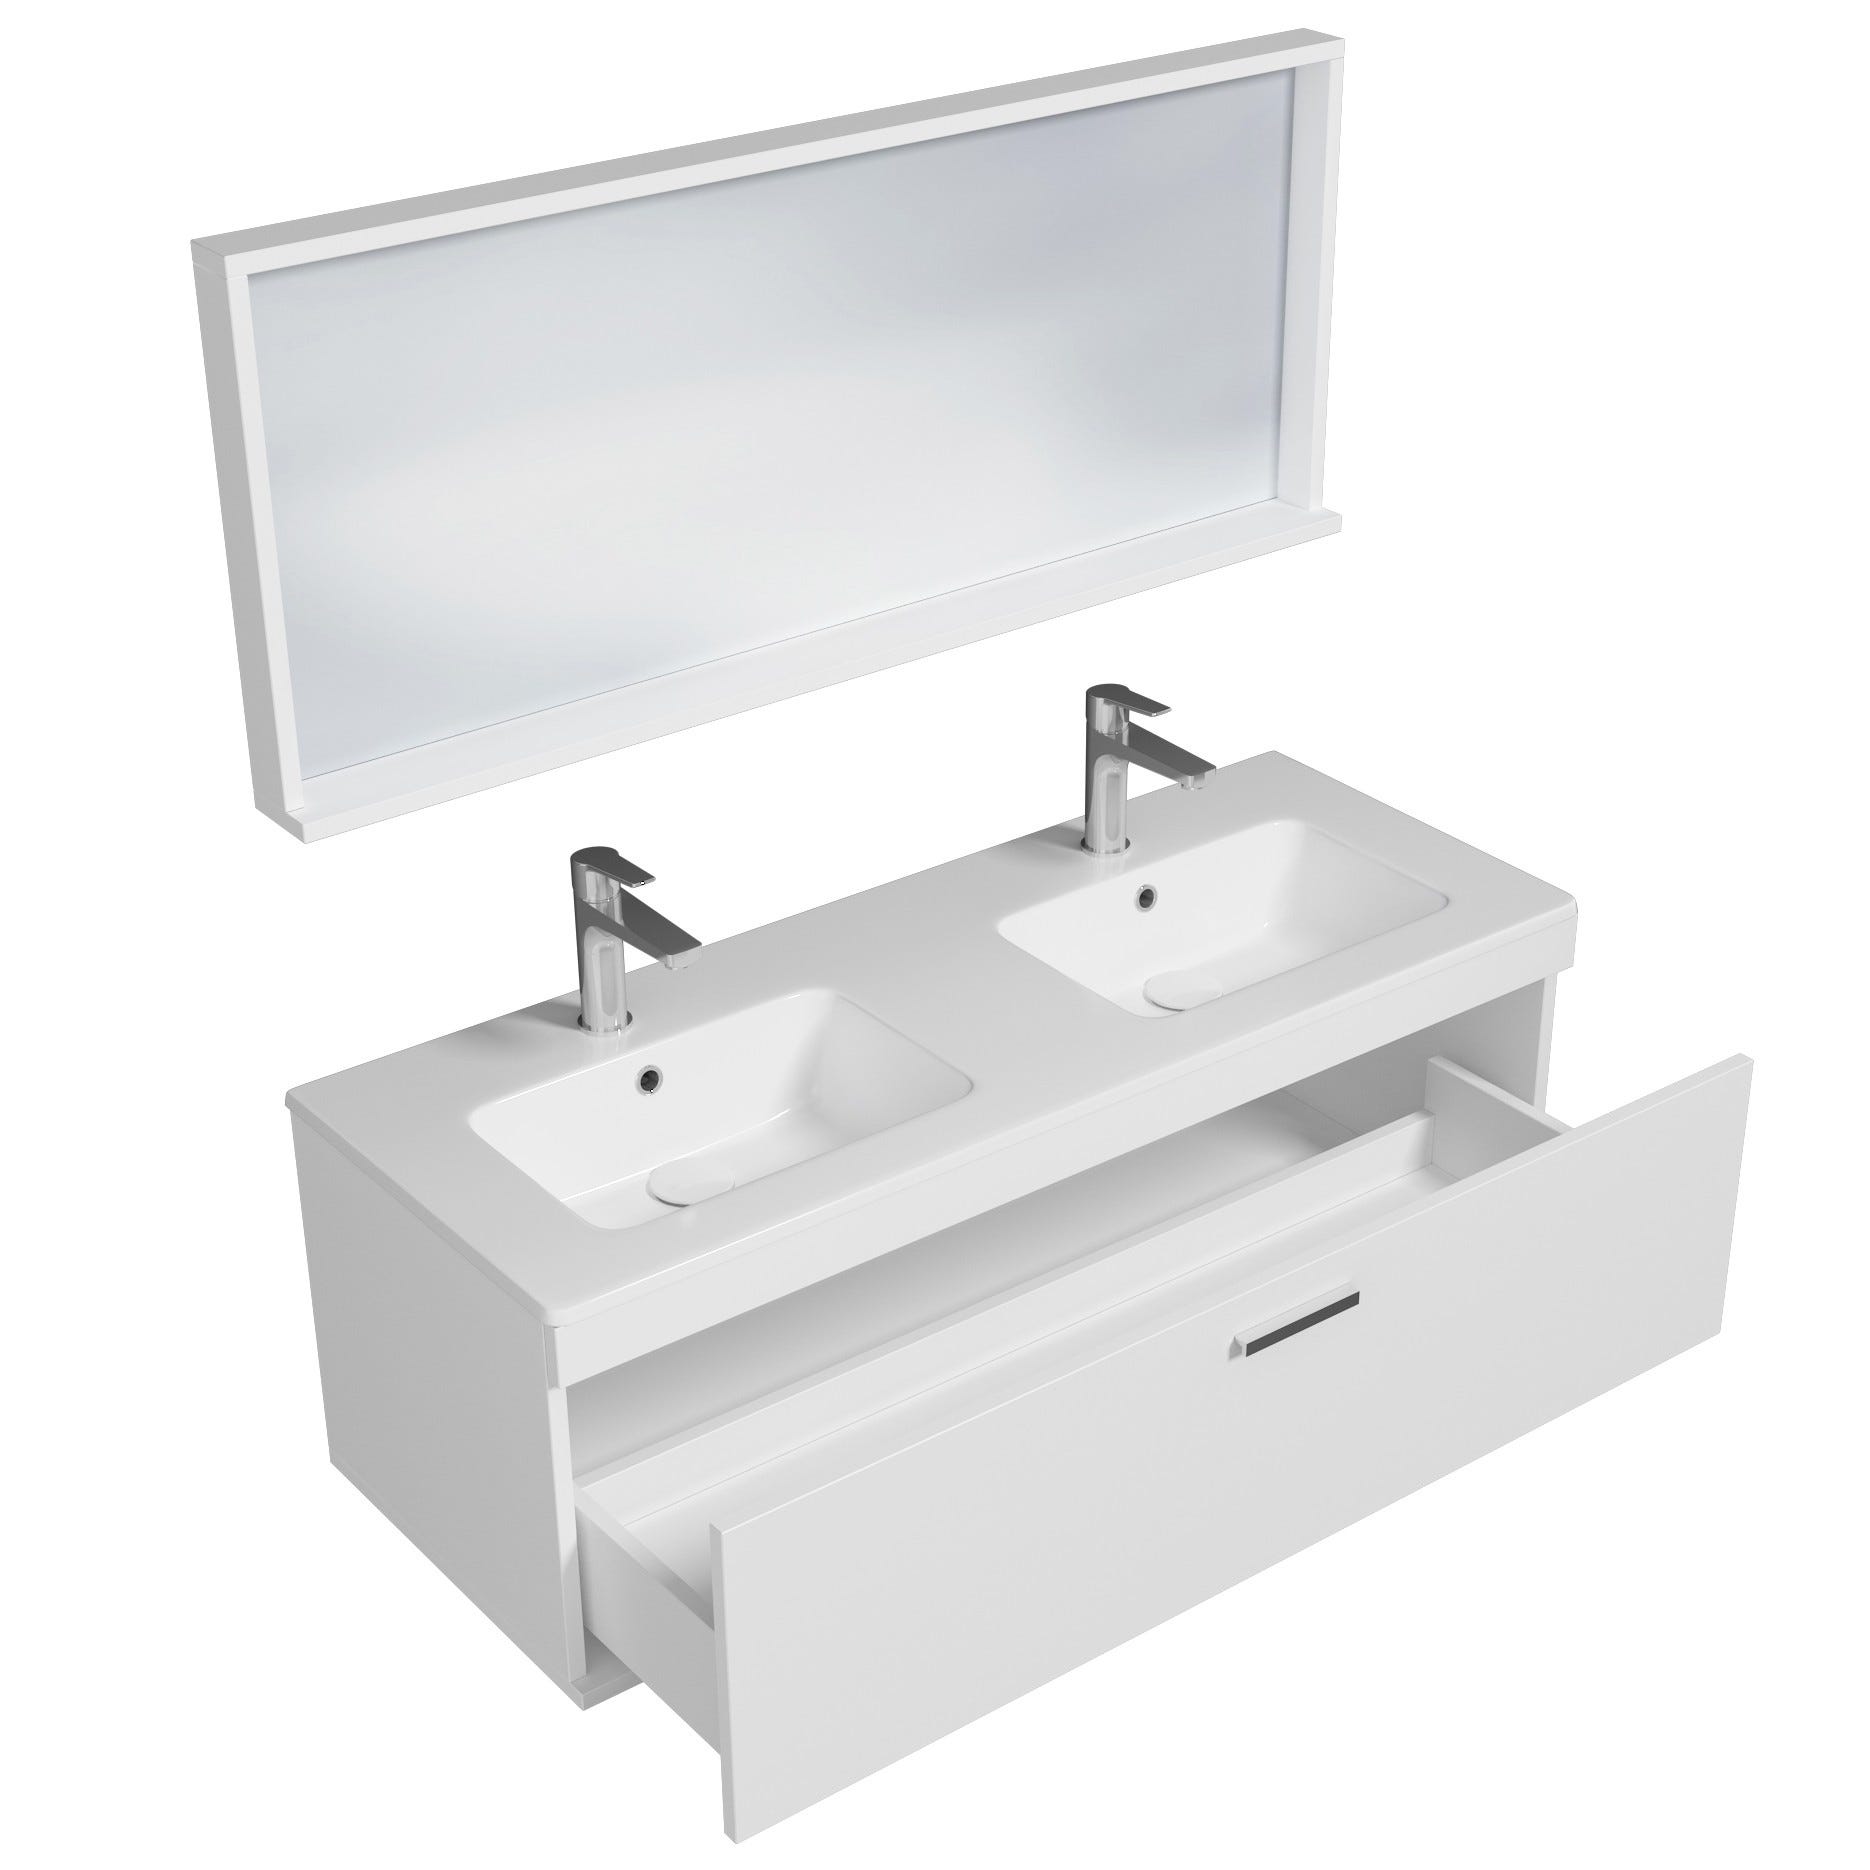 RUBITE Meuble salle de bain double vasque 1 tiroir blanc largeur 120 cm + miroir cadre 1